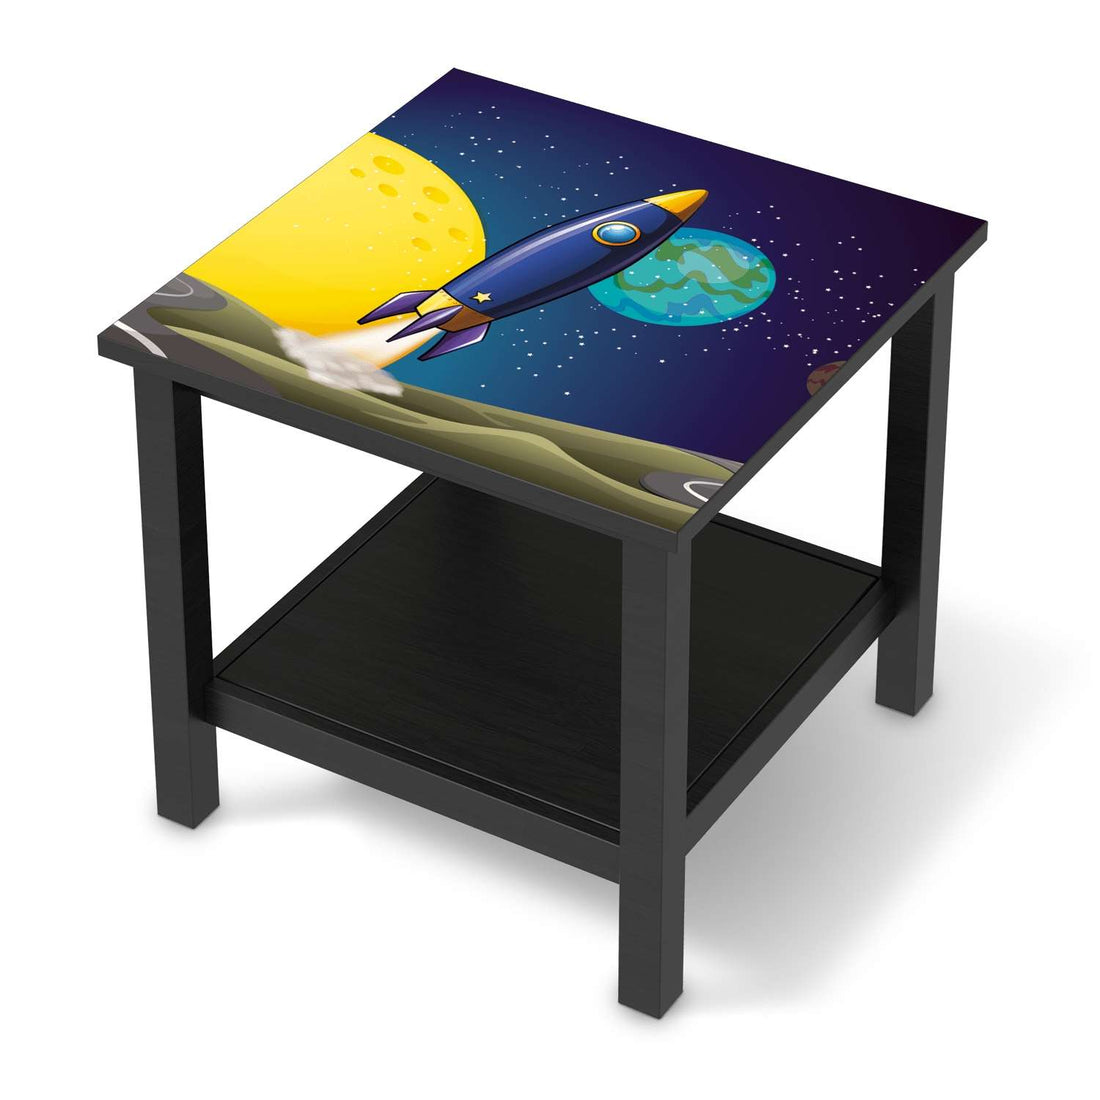 Möbel Klebefolie Space Rocket - IKEA Hemnes Beistelltisch 55x55 cm - schwarz